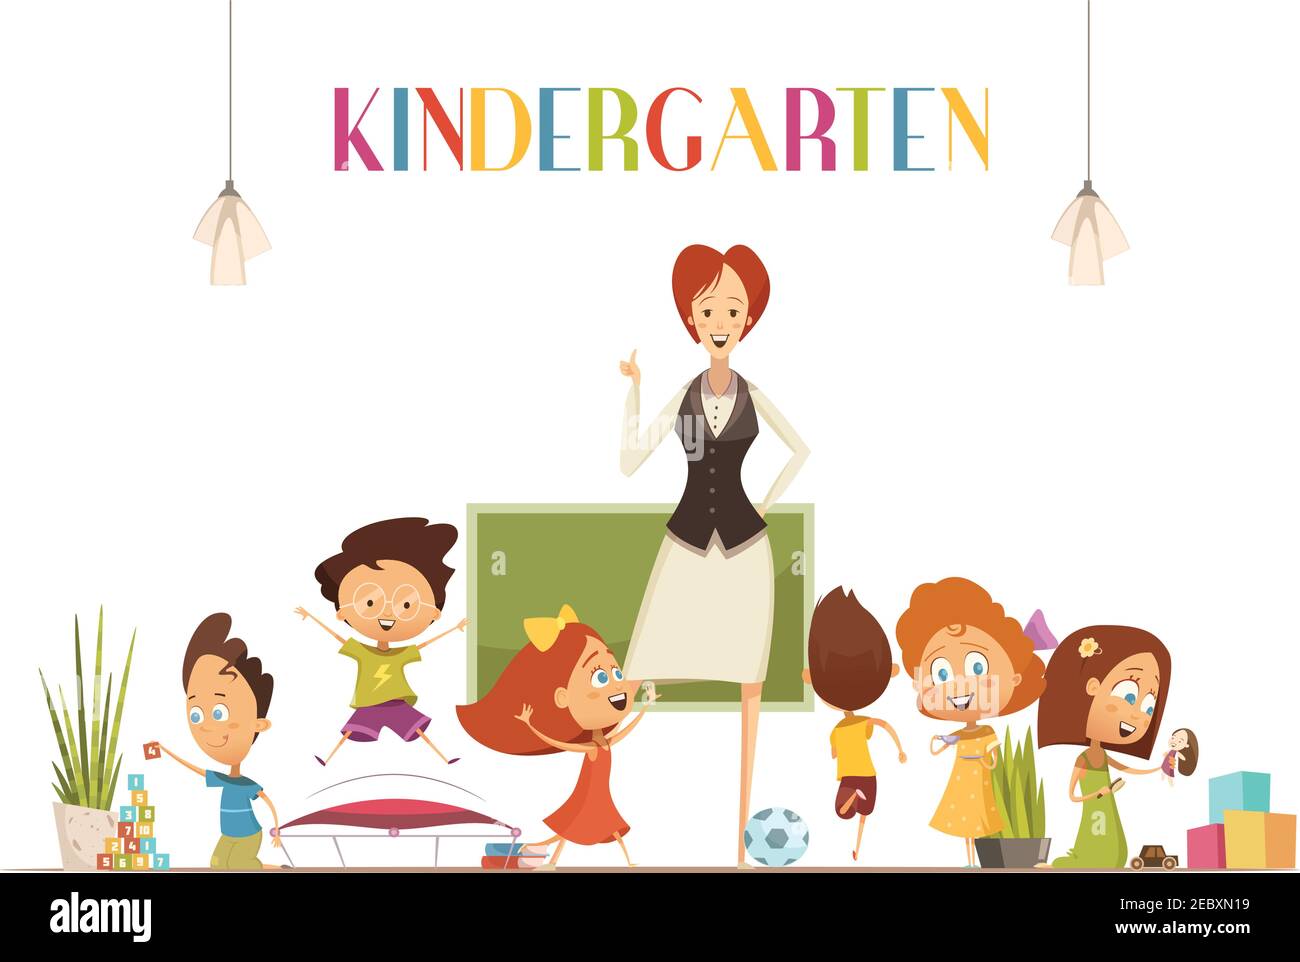 Kindergarten teacher in positive classroom environment coordinates children activities for effective learning retro cartoon poster illustration vector Stock Vector